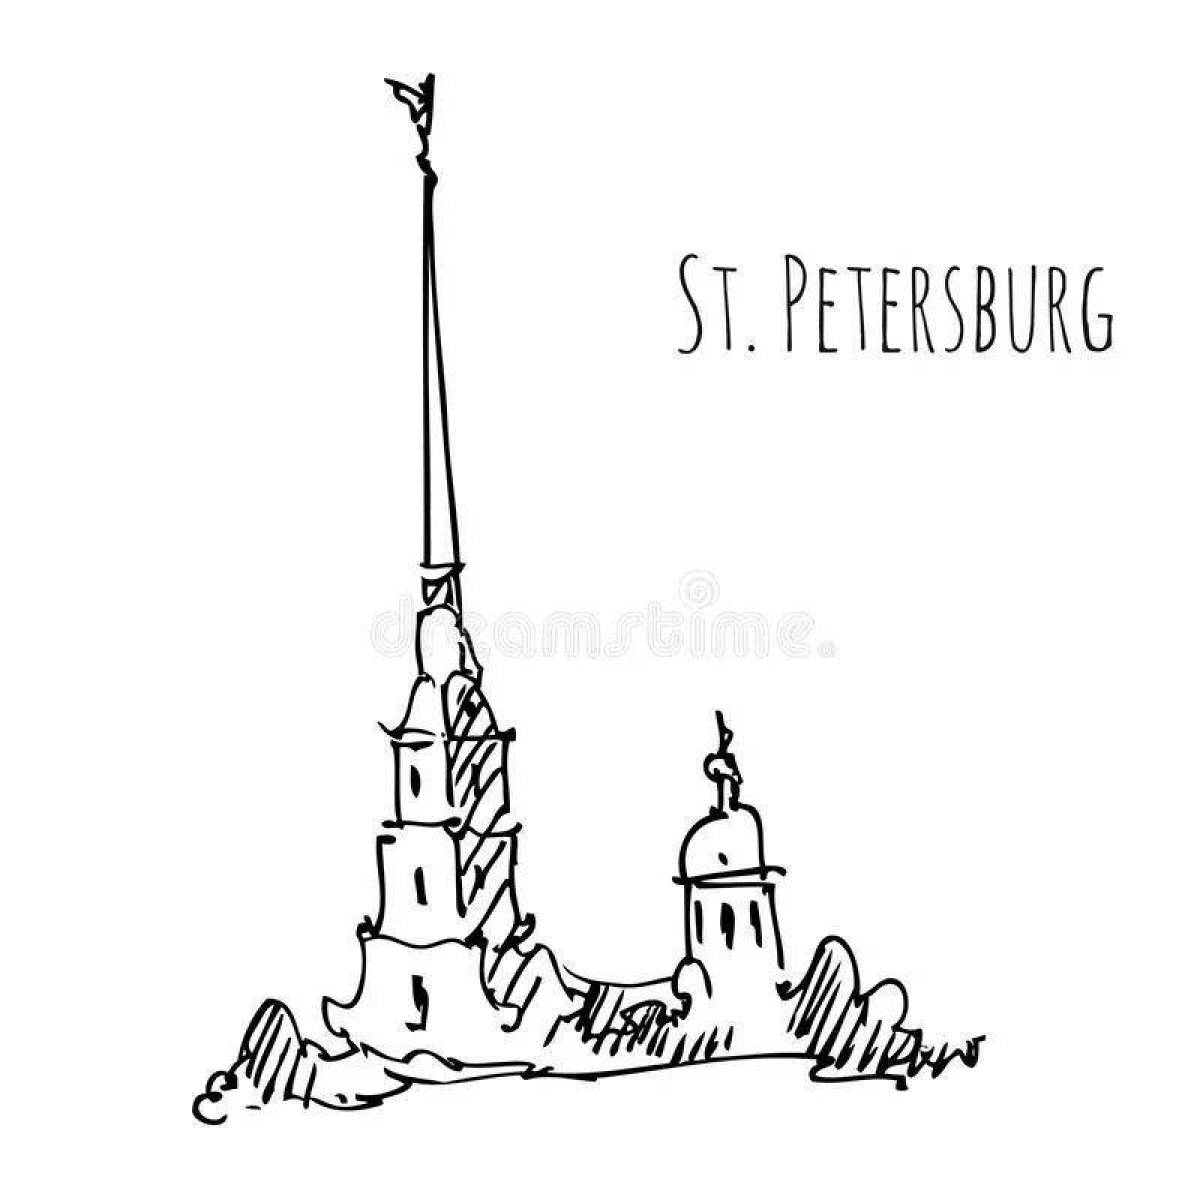 Петропавловская крепость в Санкт-Петербурге рисунок